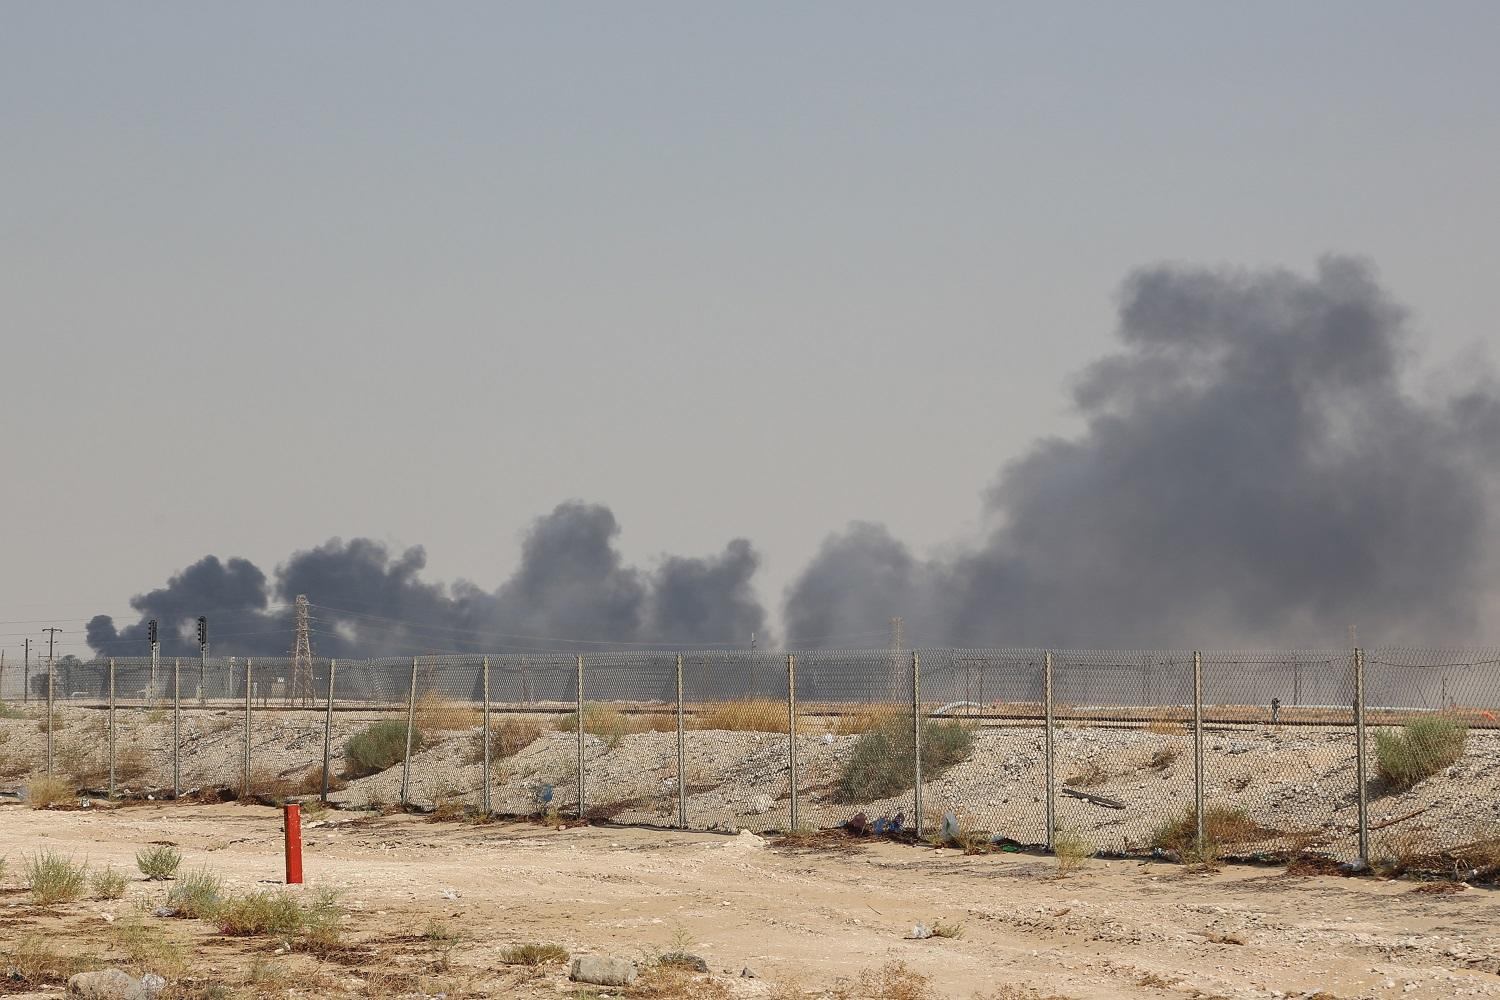 تصاعد الدخان من منشأة نفط أرامكو في بقيق على بعد 60 كيلومترا جنوب غربي الظهران في المنطقة الشرقية في السعودية، 14 أيلول/سبتمبر 2019. (أ ف ب)